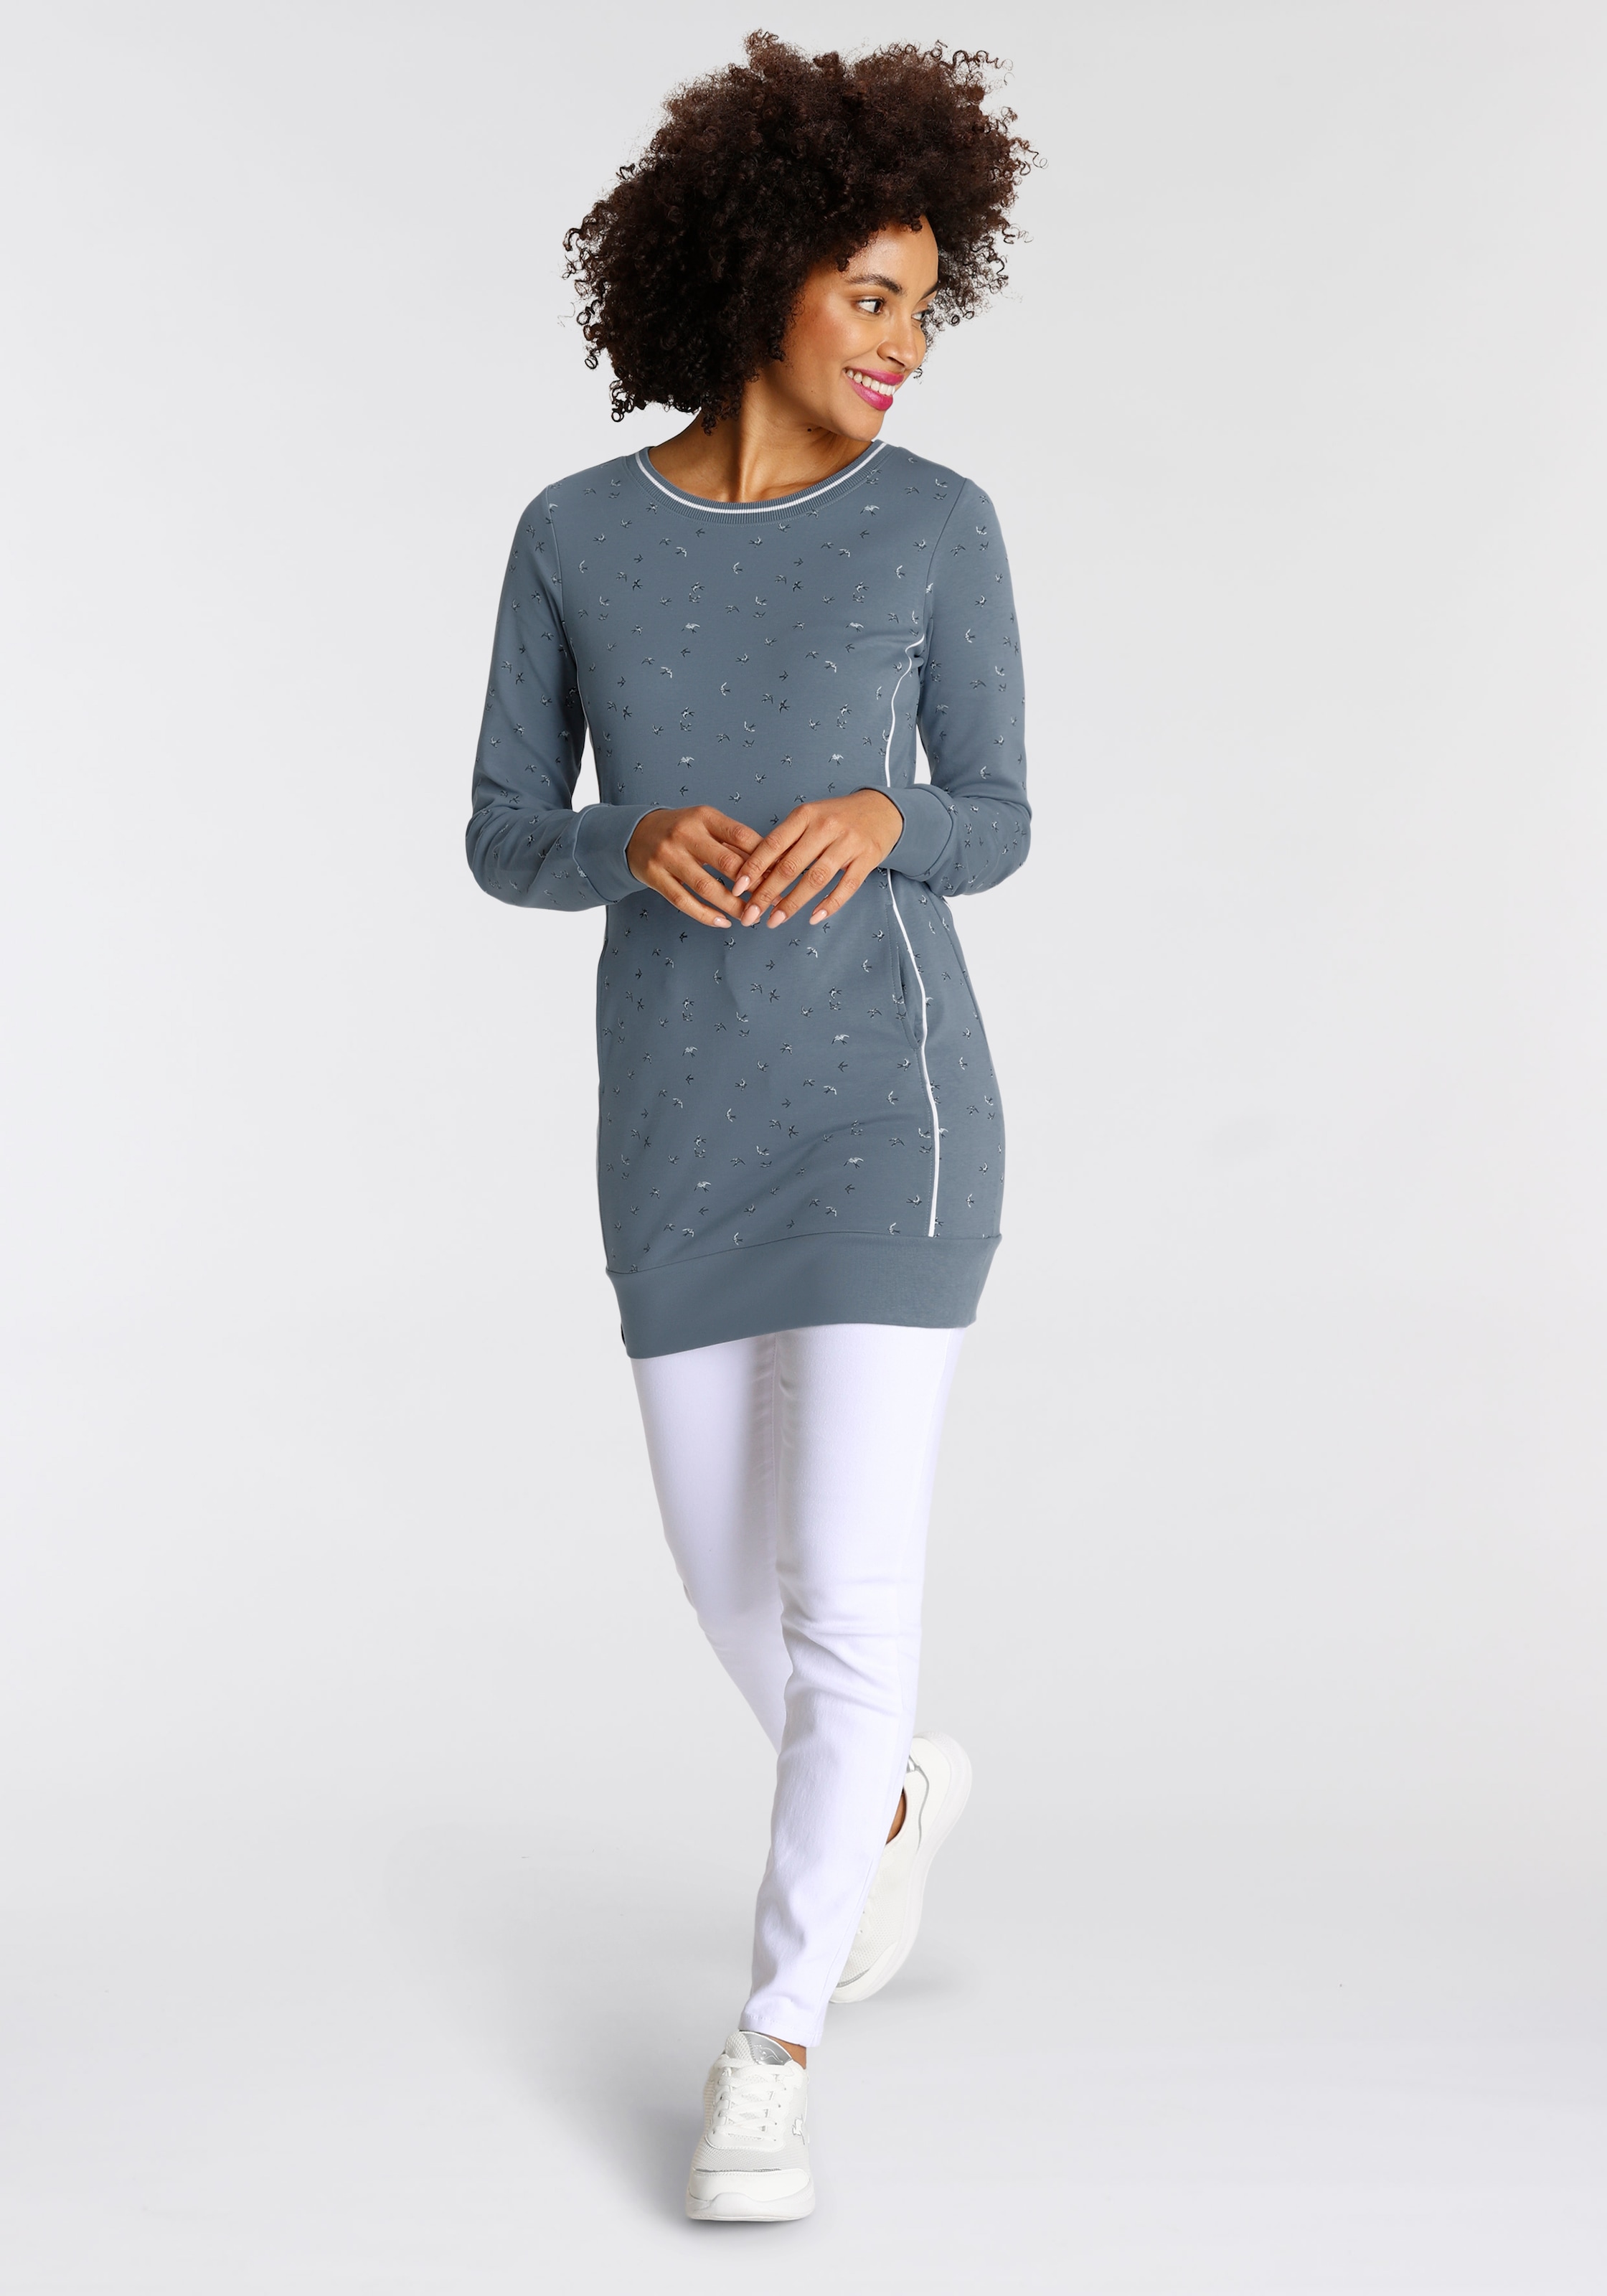 Sweater im KangaROOS Online OTTO kaufen Shop